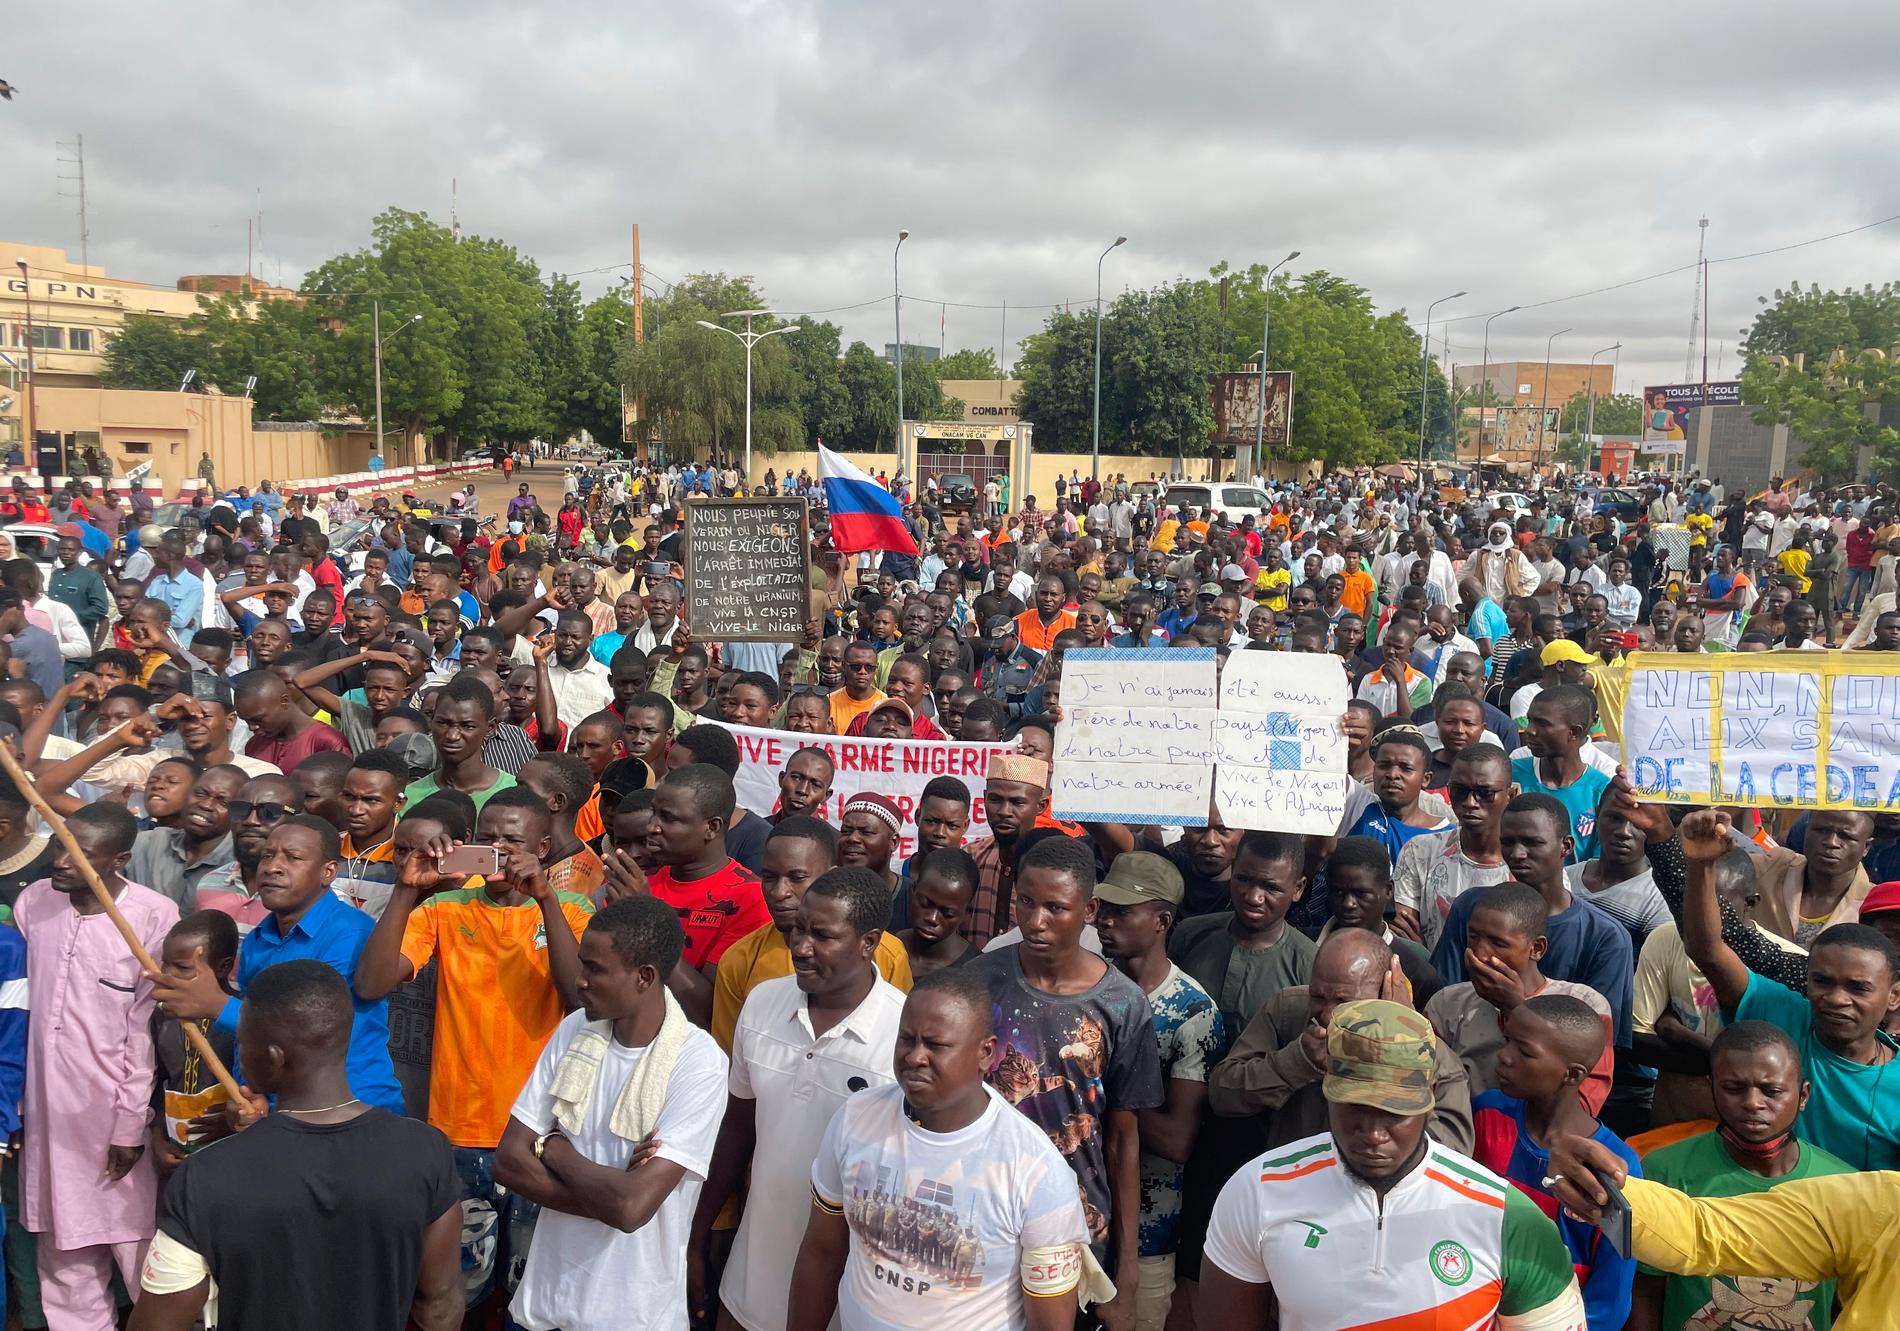 En dryg vecka har gått sedan generaler i Niger störtade den demokratiskt valde presidenten. 